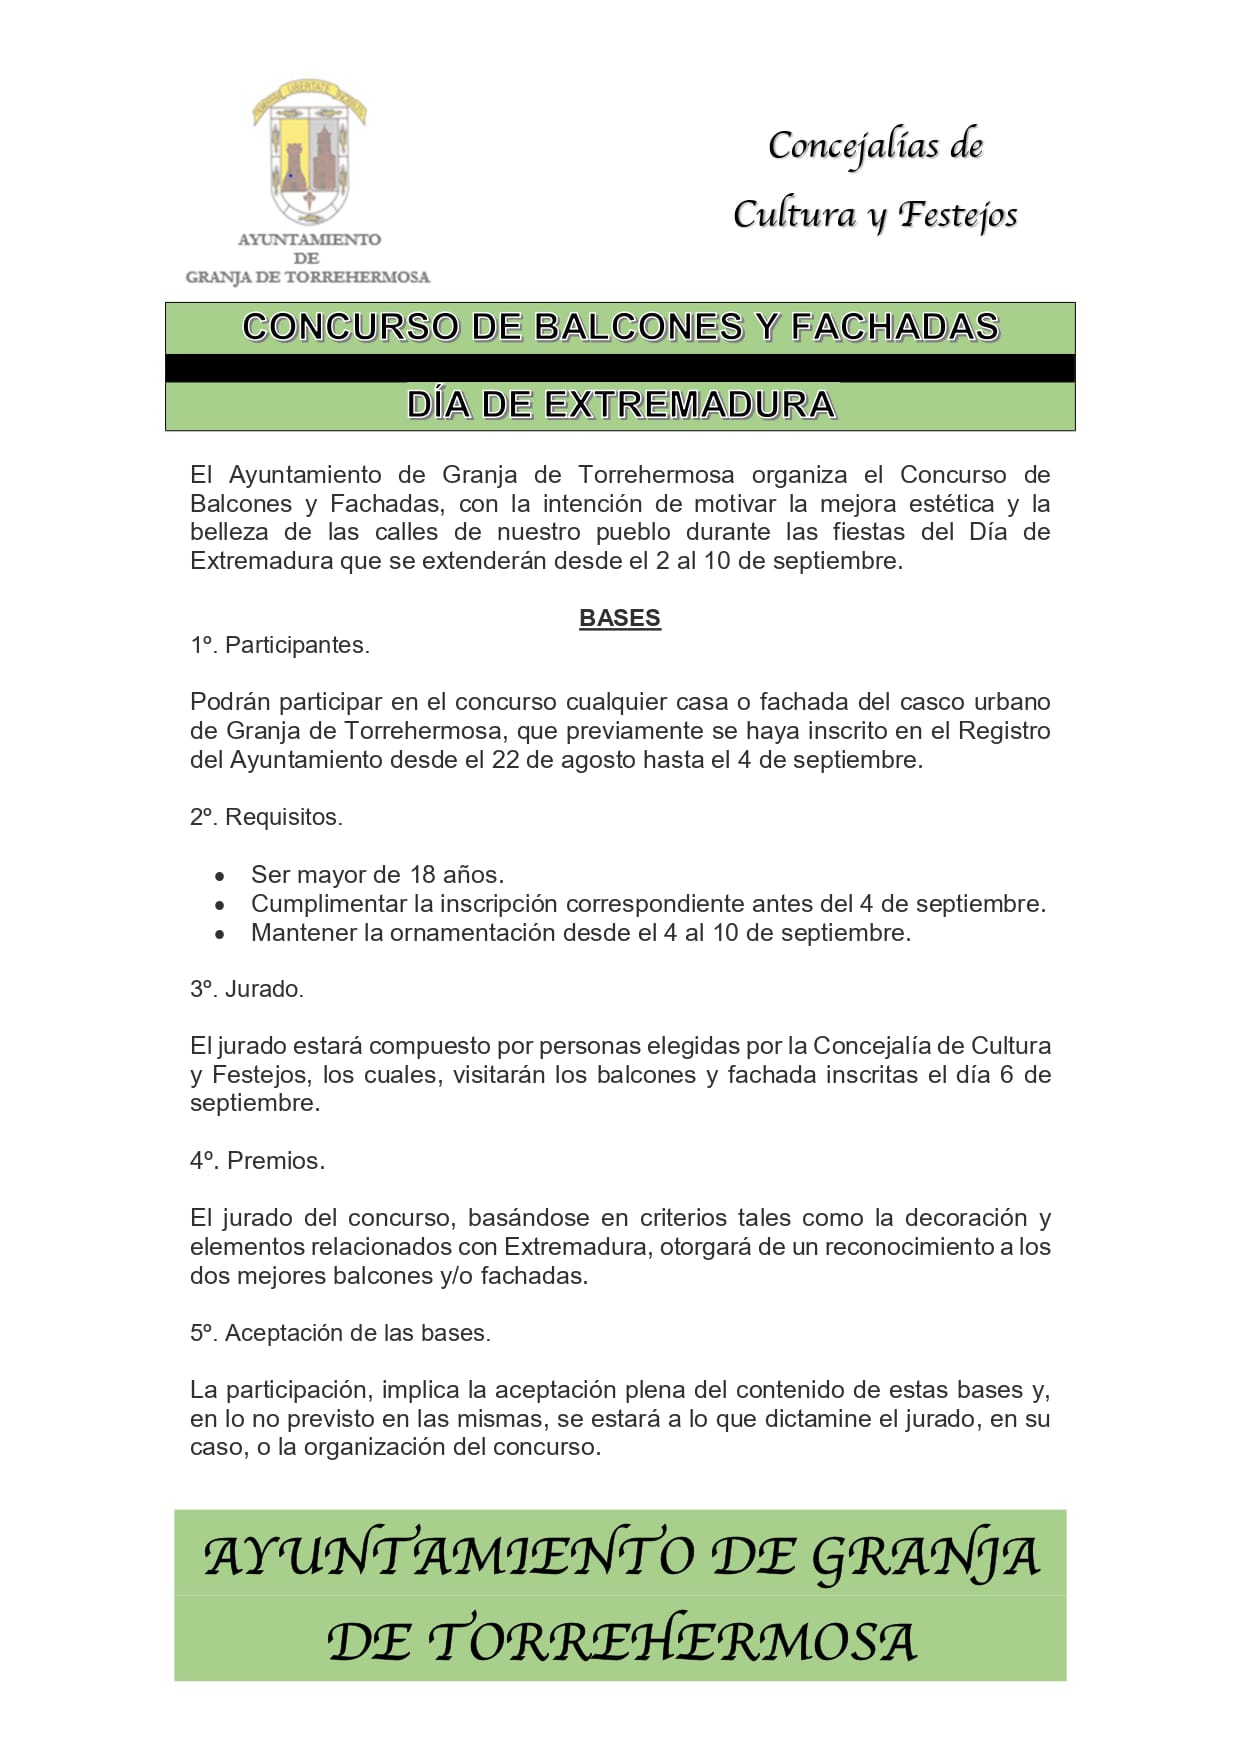 Granja de Torrehermosa Informa - Servicio de comunicación vía web